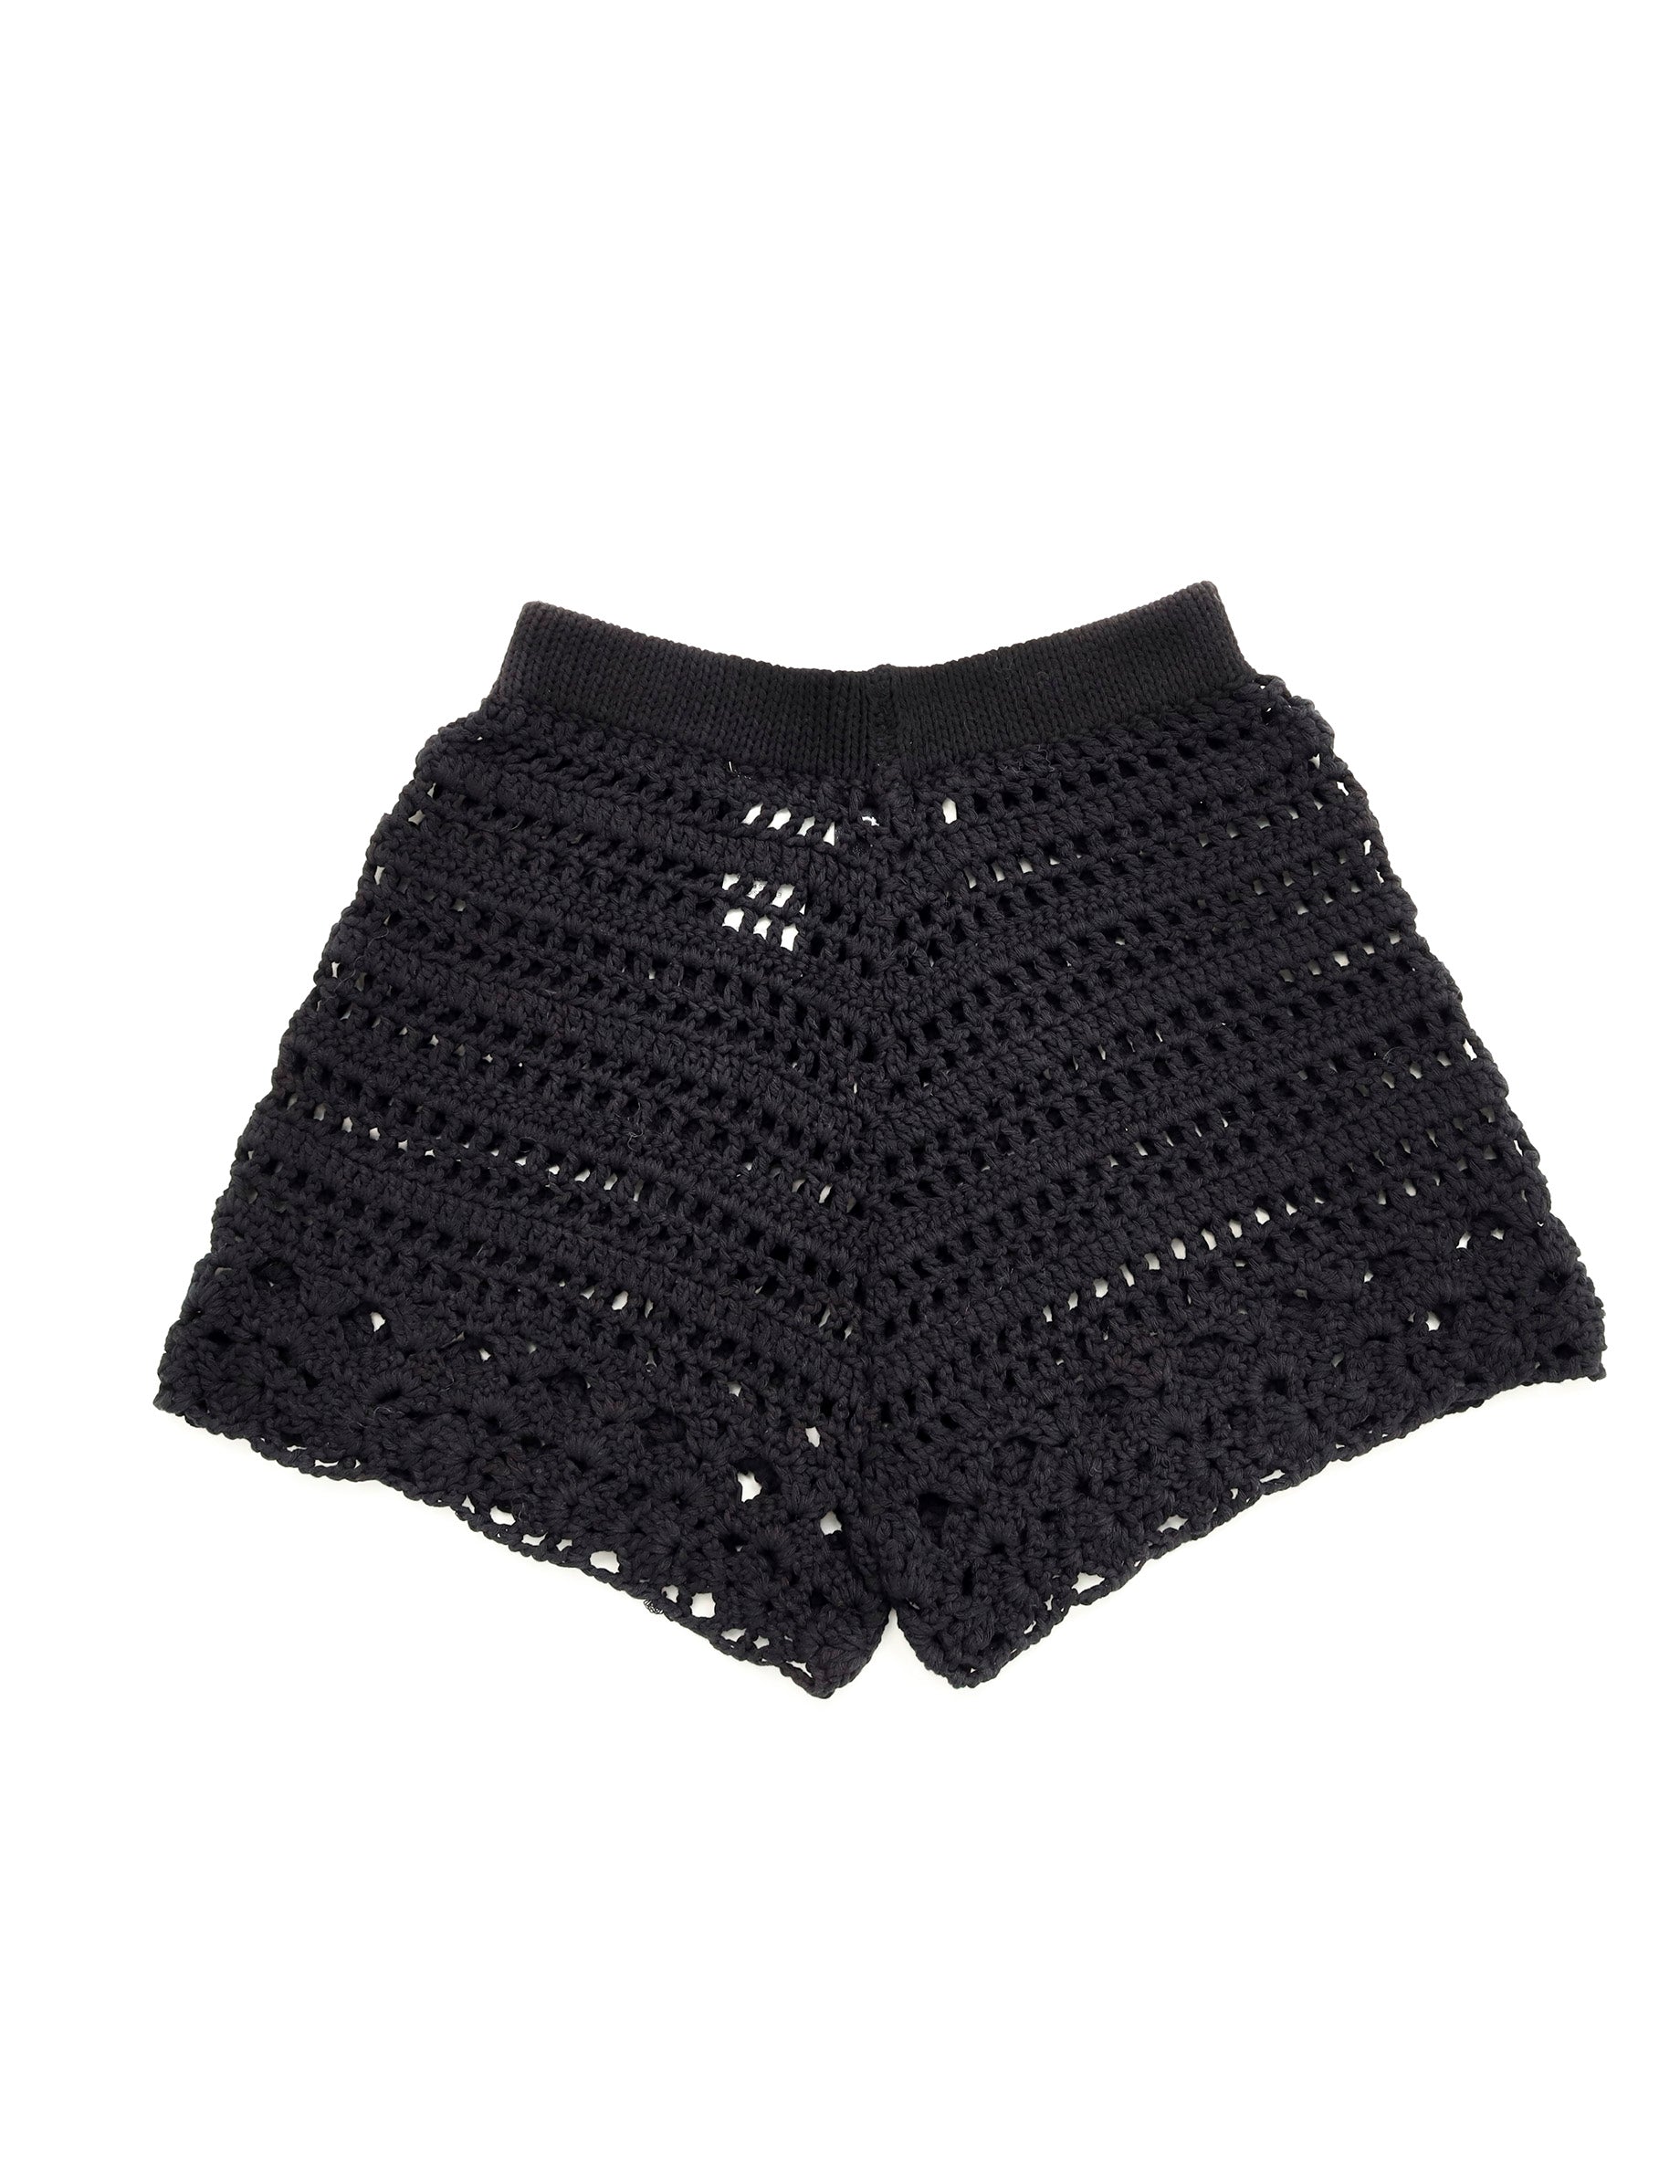 short-crochet-negro-1_b76c474d-561c-49e1-927b-85bf8594f192.jpg